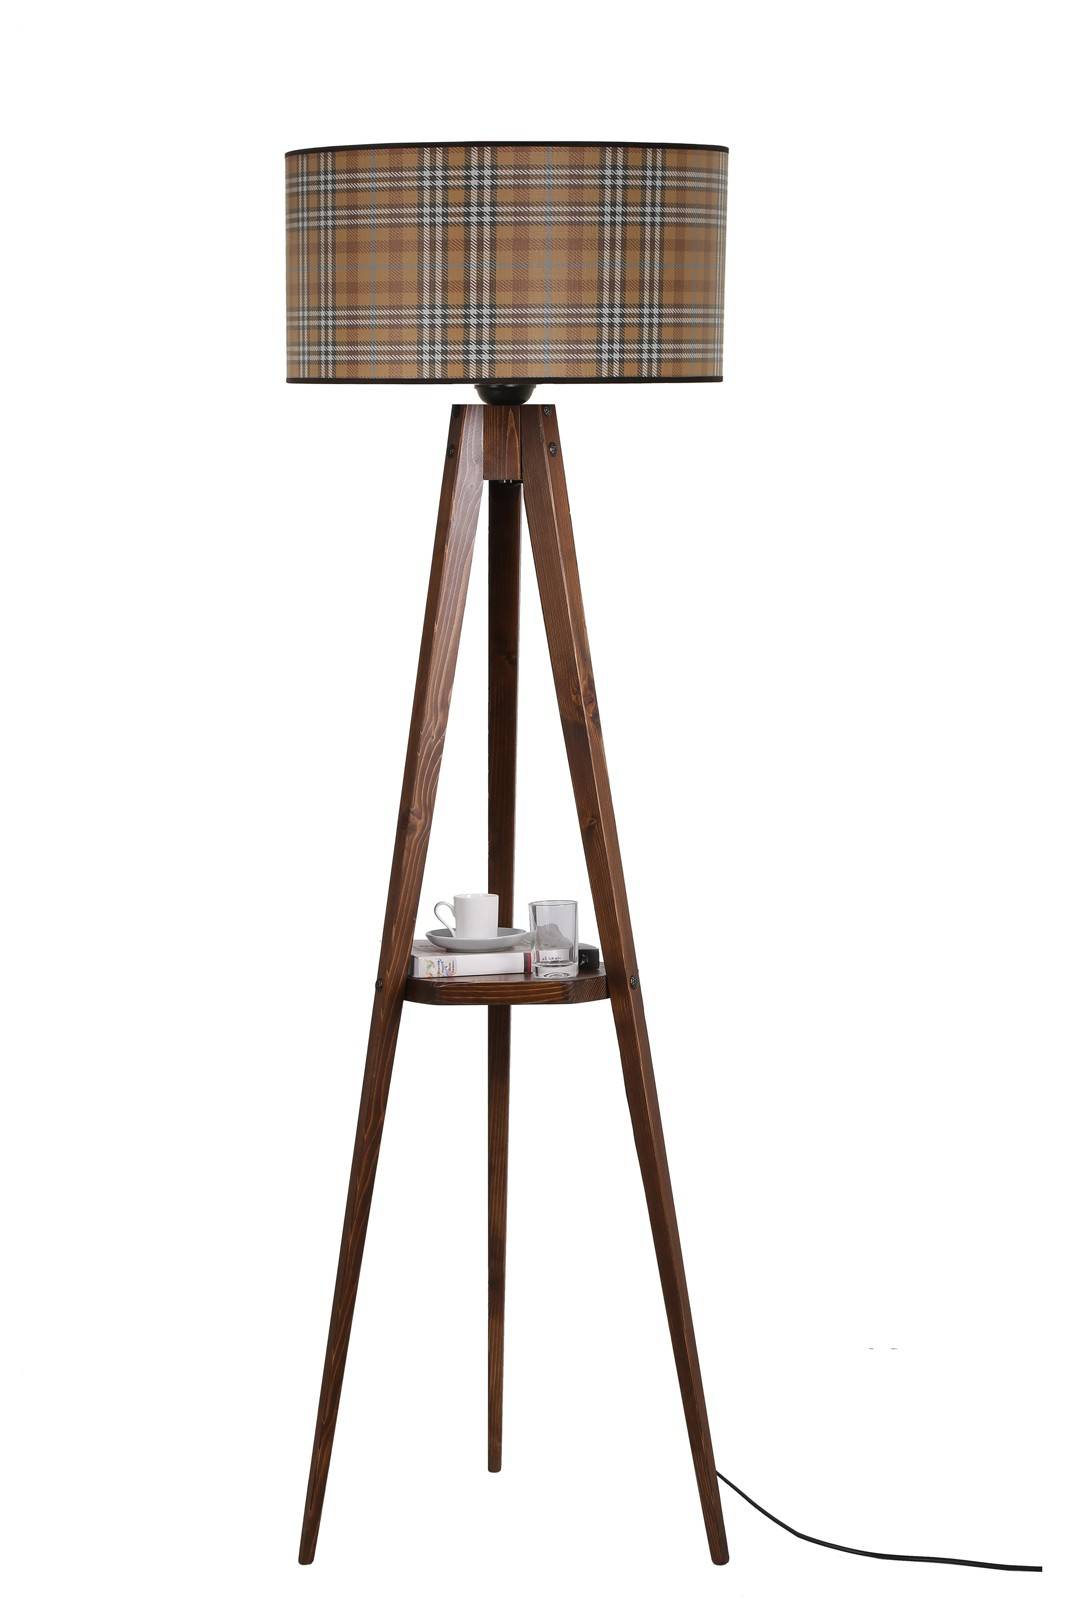 Bedlampje met polygoon plankje en tweed kap Iunctura H165 cm Hout Stof Noten Multicolour